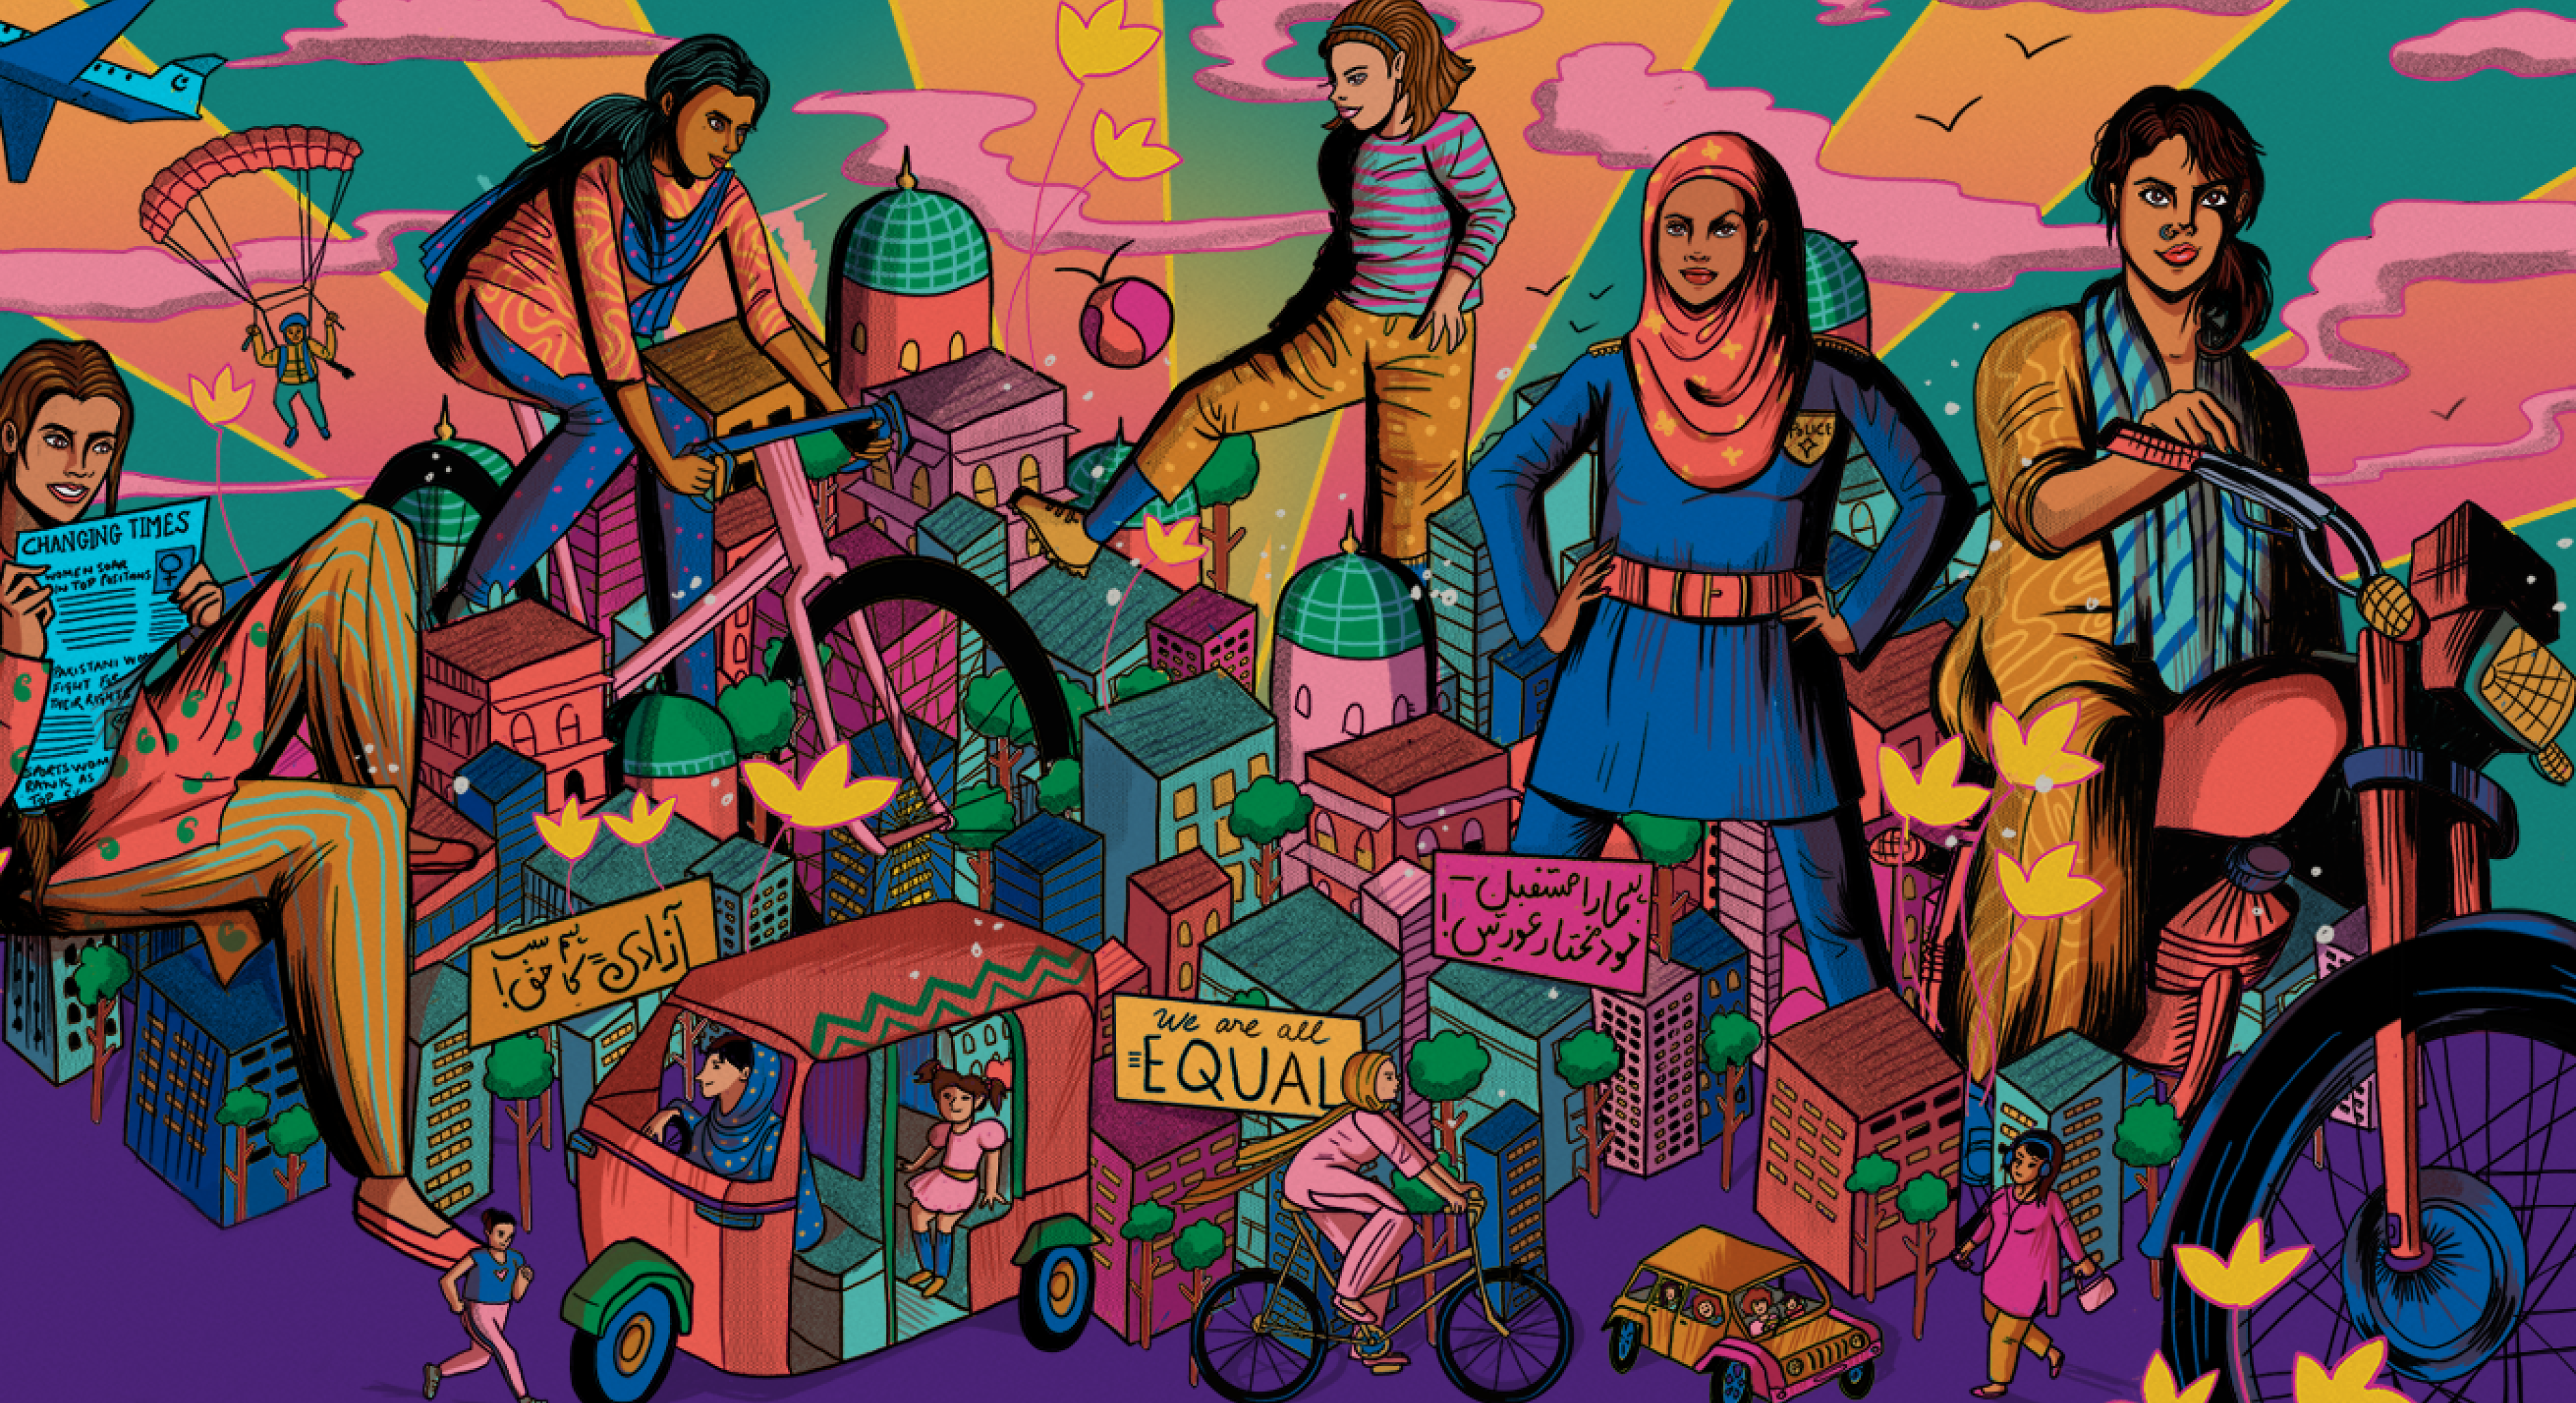 Bunte Illustration: 5 unterschiedliche Frauen positionieren sich in einem Stadtbild, das wie eine Spielstadt aussieht, weil die Personen übergroß gestaltet wurden. Titel: We are all EQUAL.